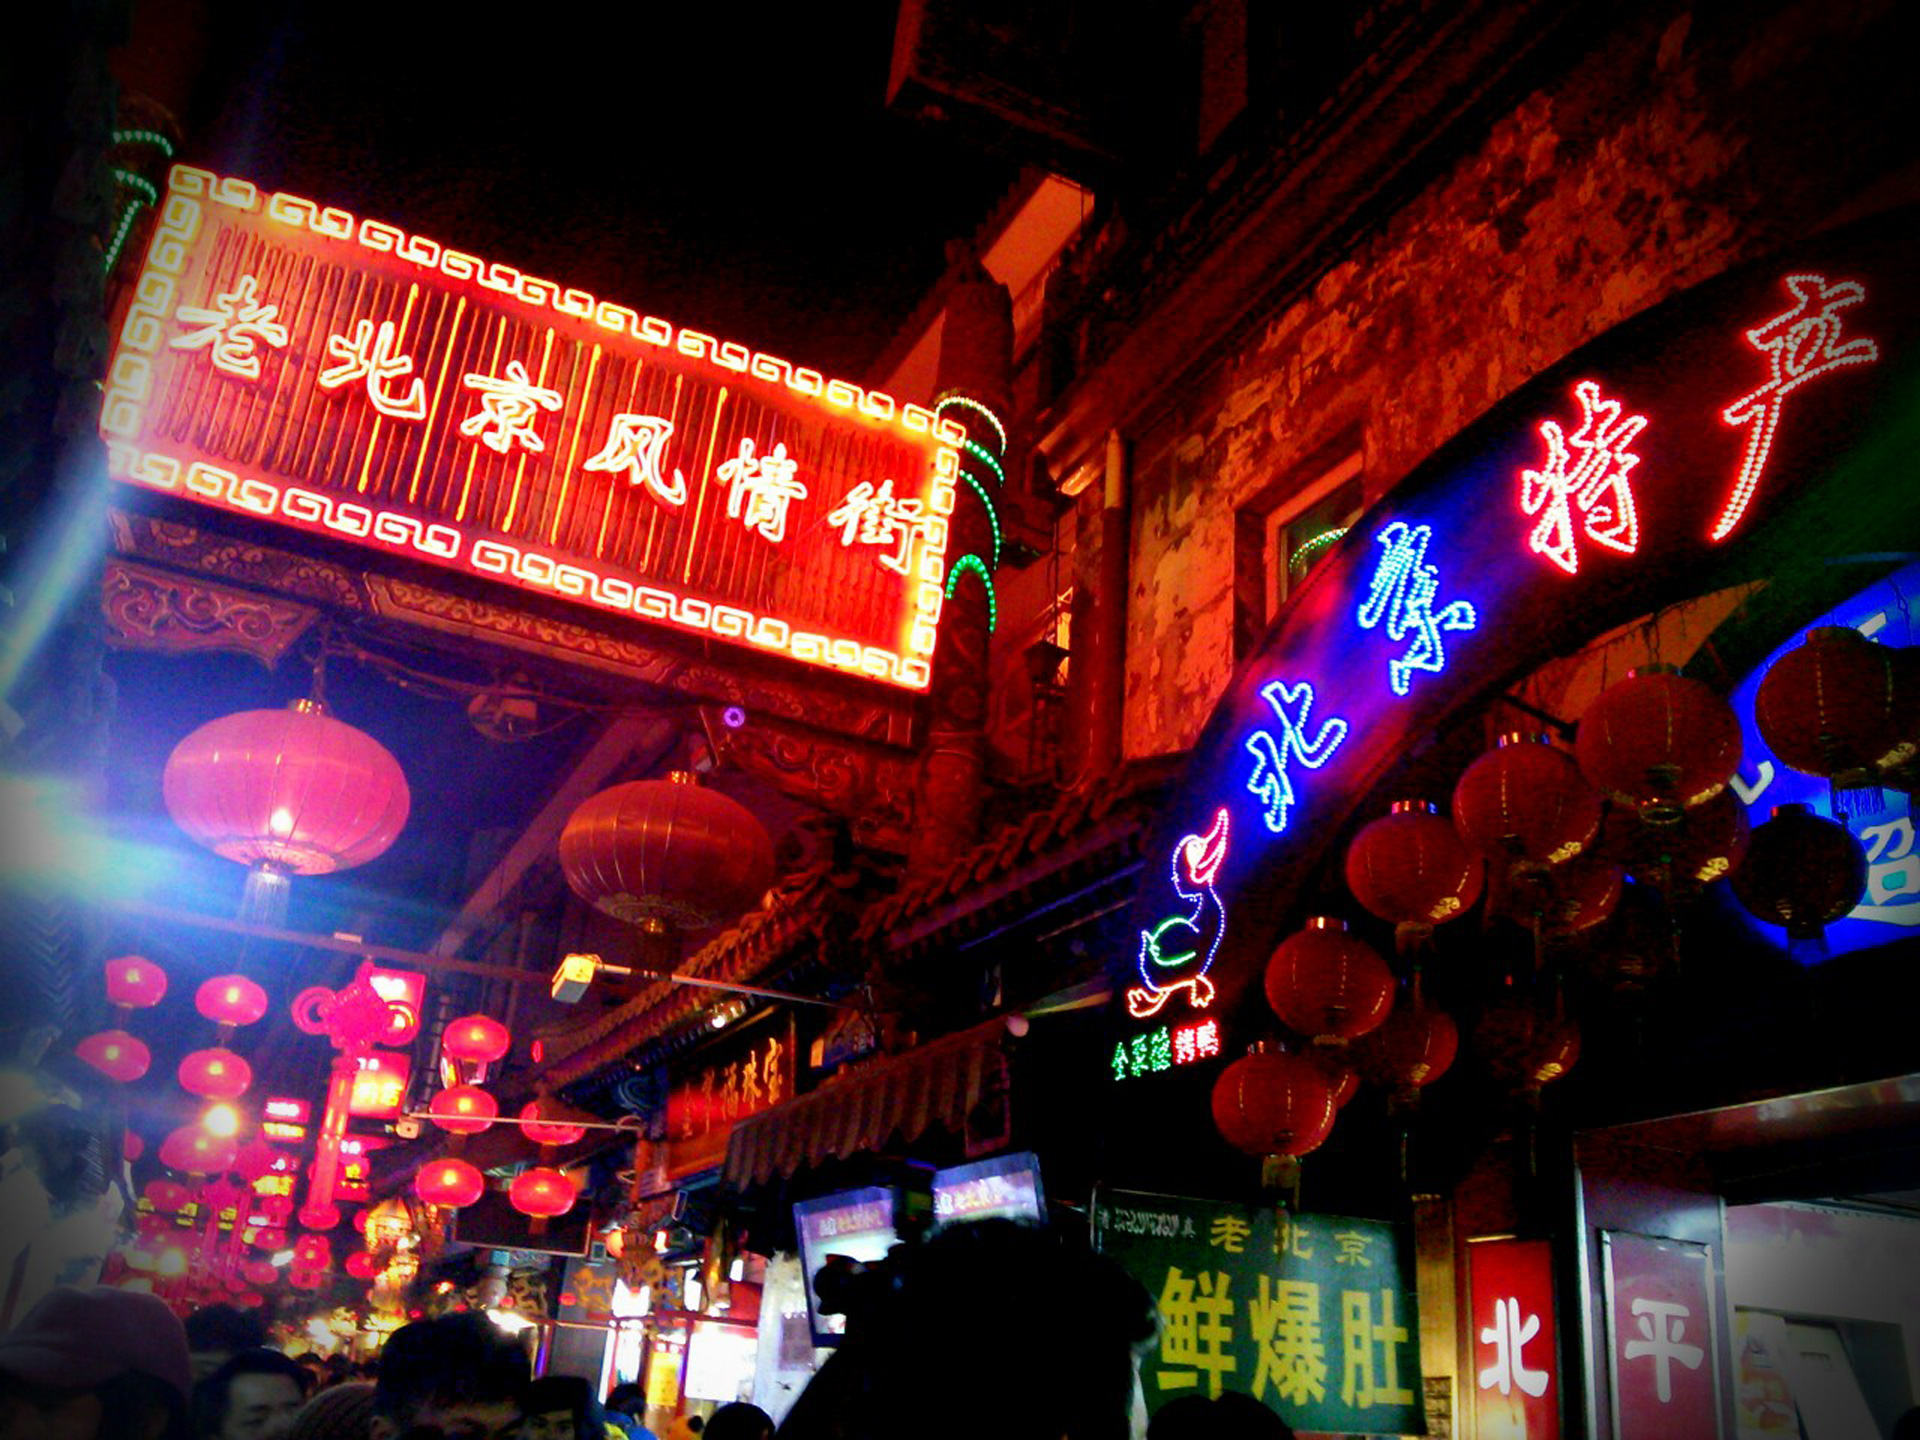 老北京風情街（ロウペキンフゼイガイ）では北京の伝統的な小吃（シャオチー）が味わえる屋台などが並び、毎夜賑わっています。